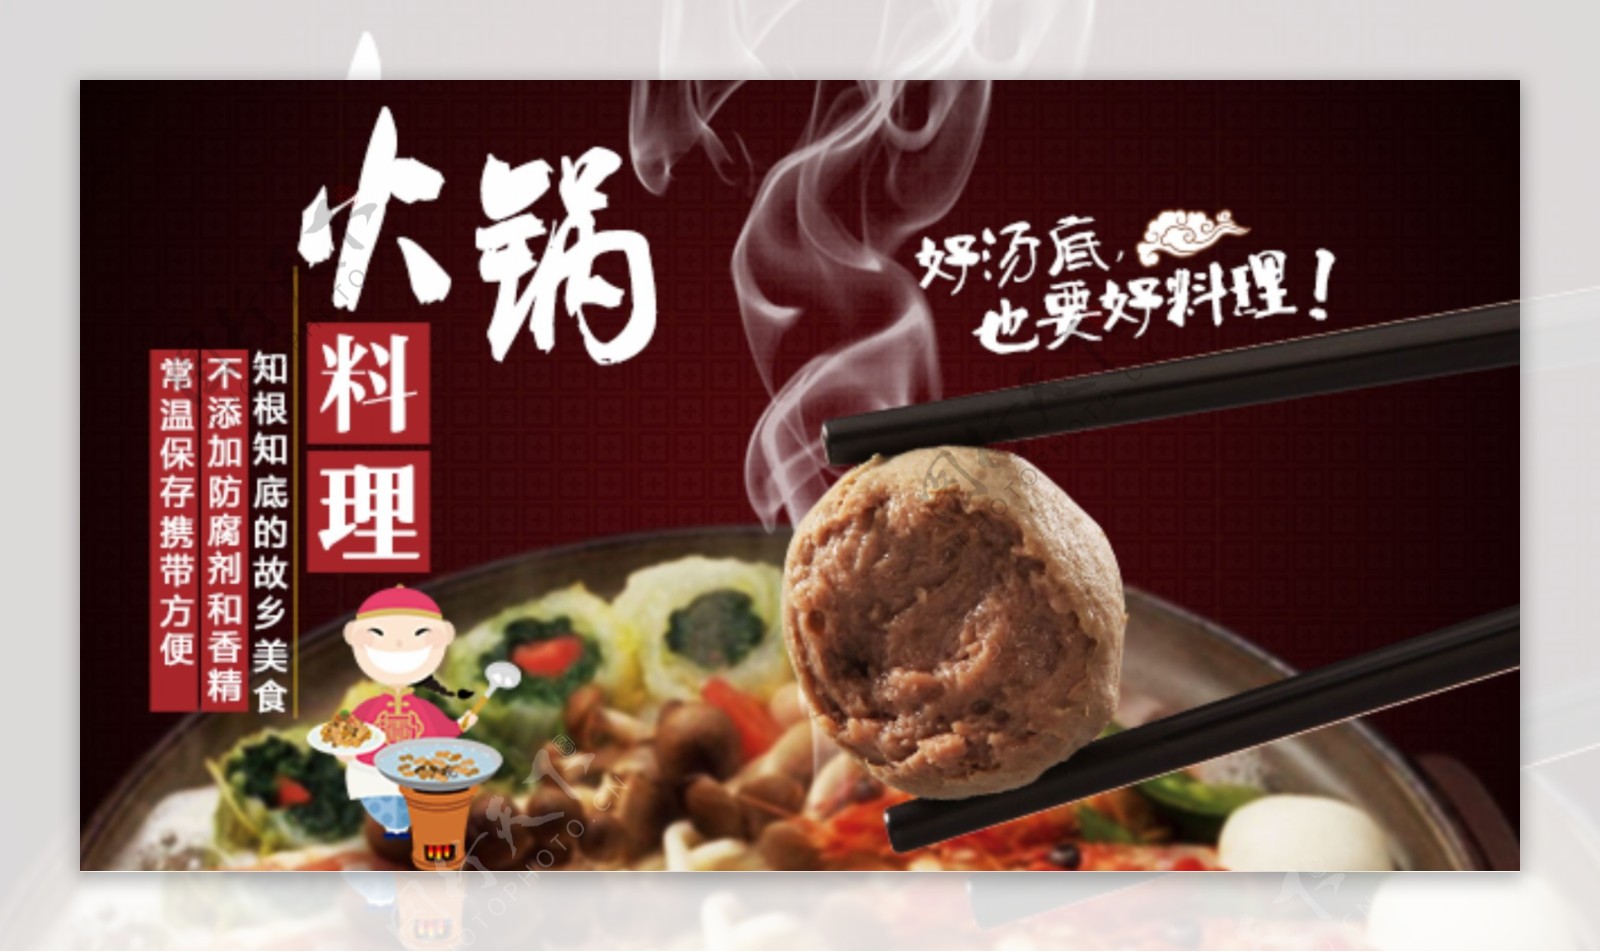 火锅食品海报